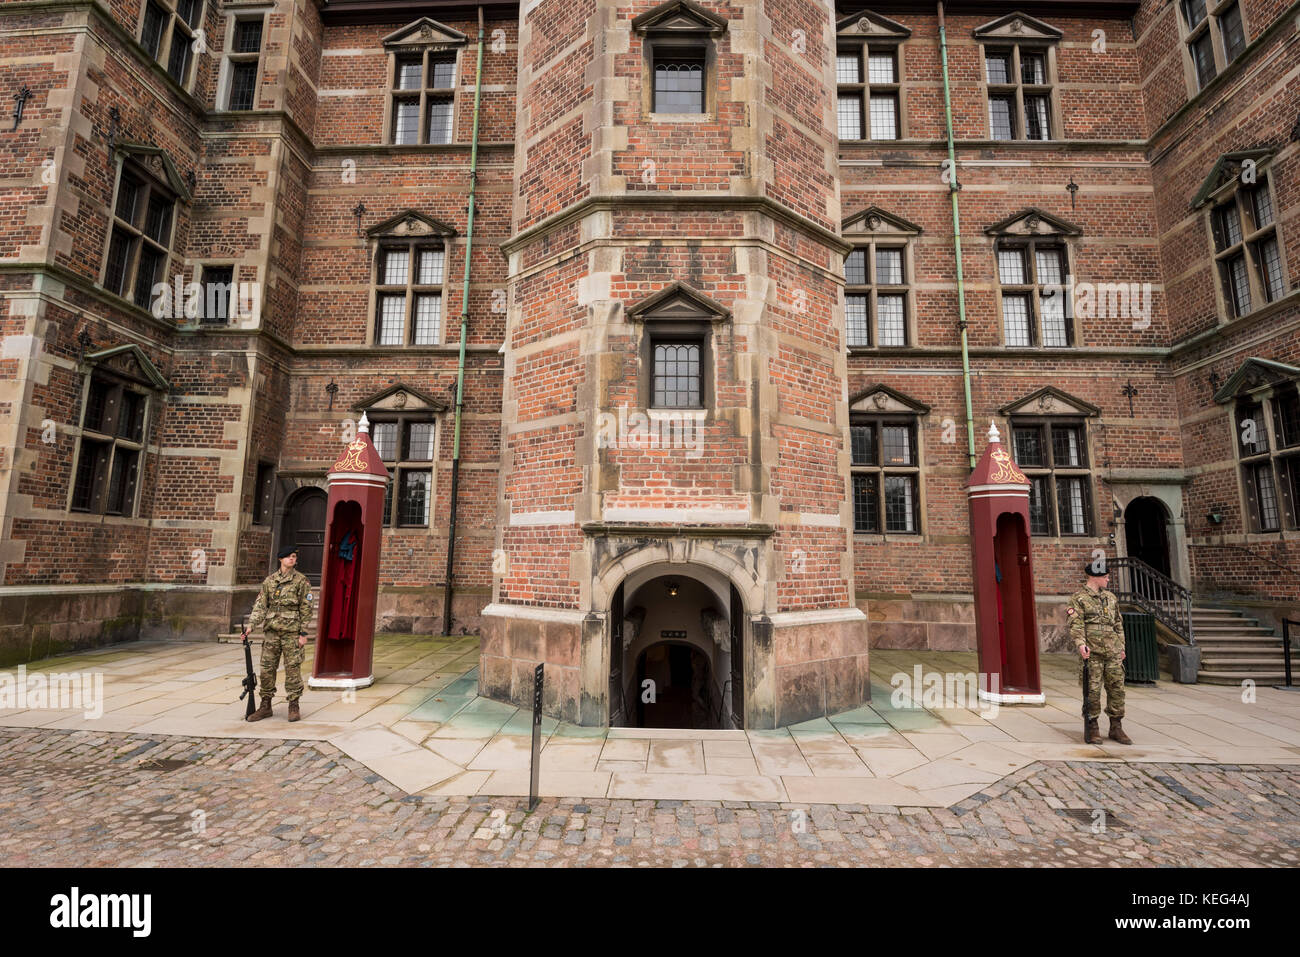 The guards ta the entrance of the Rosenborg castle, Copenhagen, Denmark Stock Photo